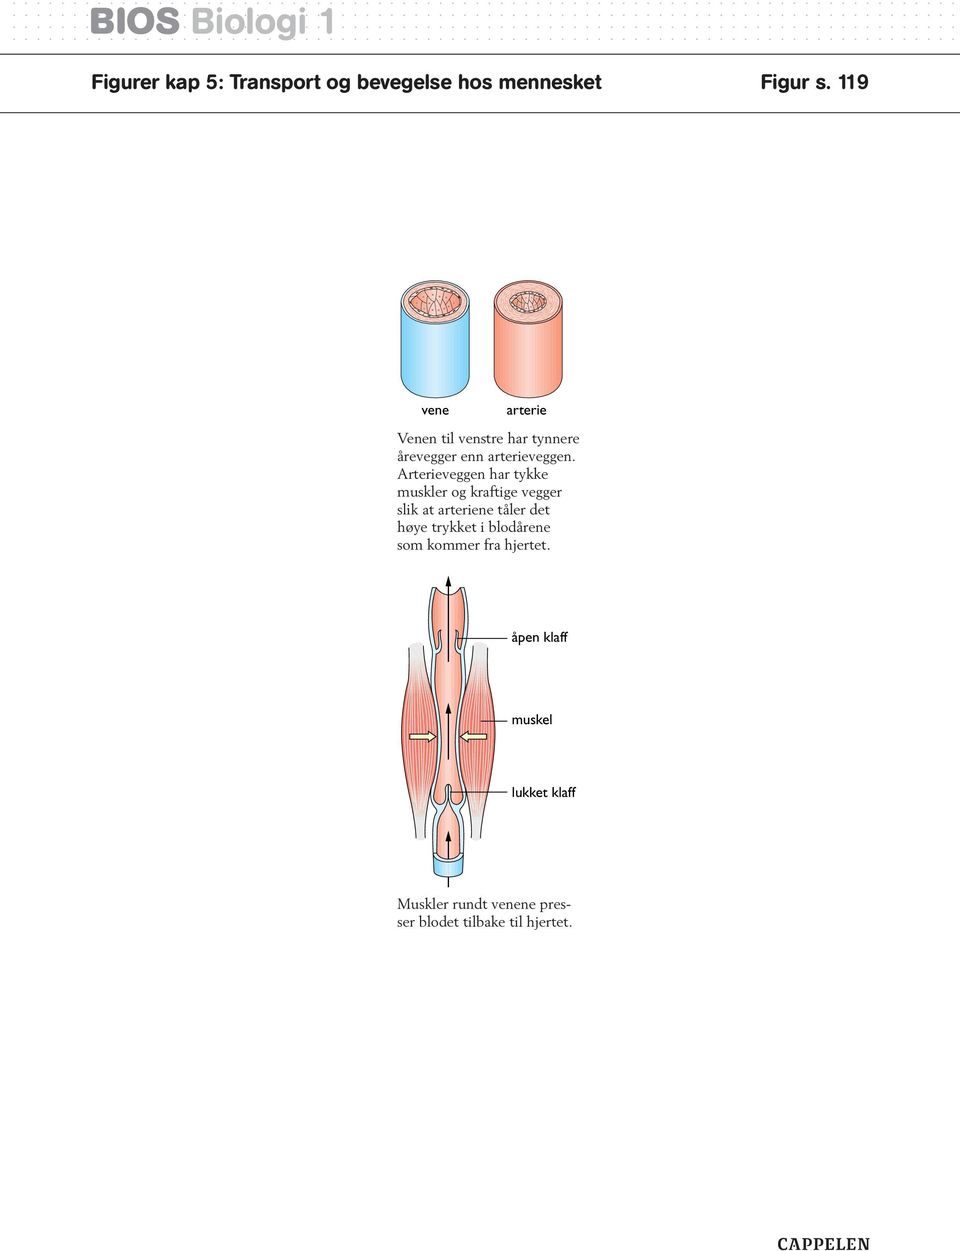 Arterieveggen har tykke muskler og kraftige vegger slik at arteriene tåler det høye